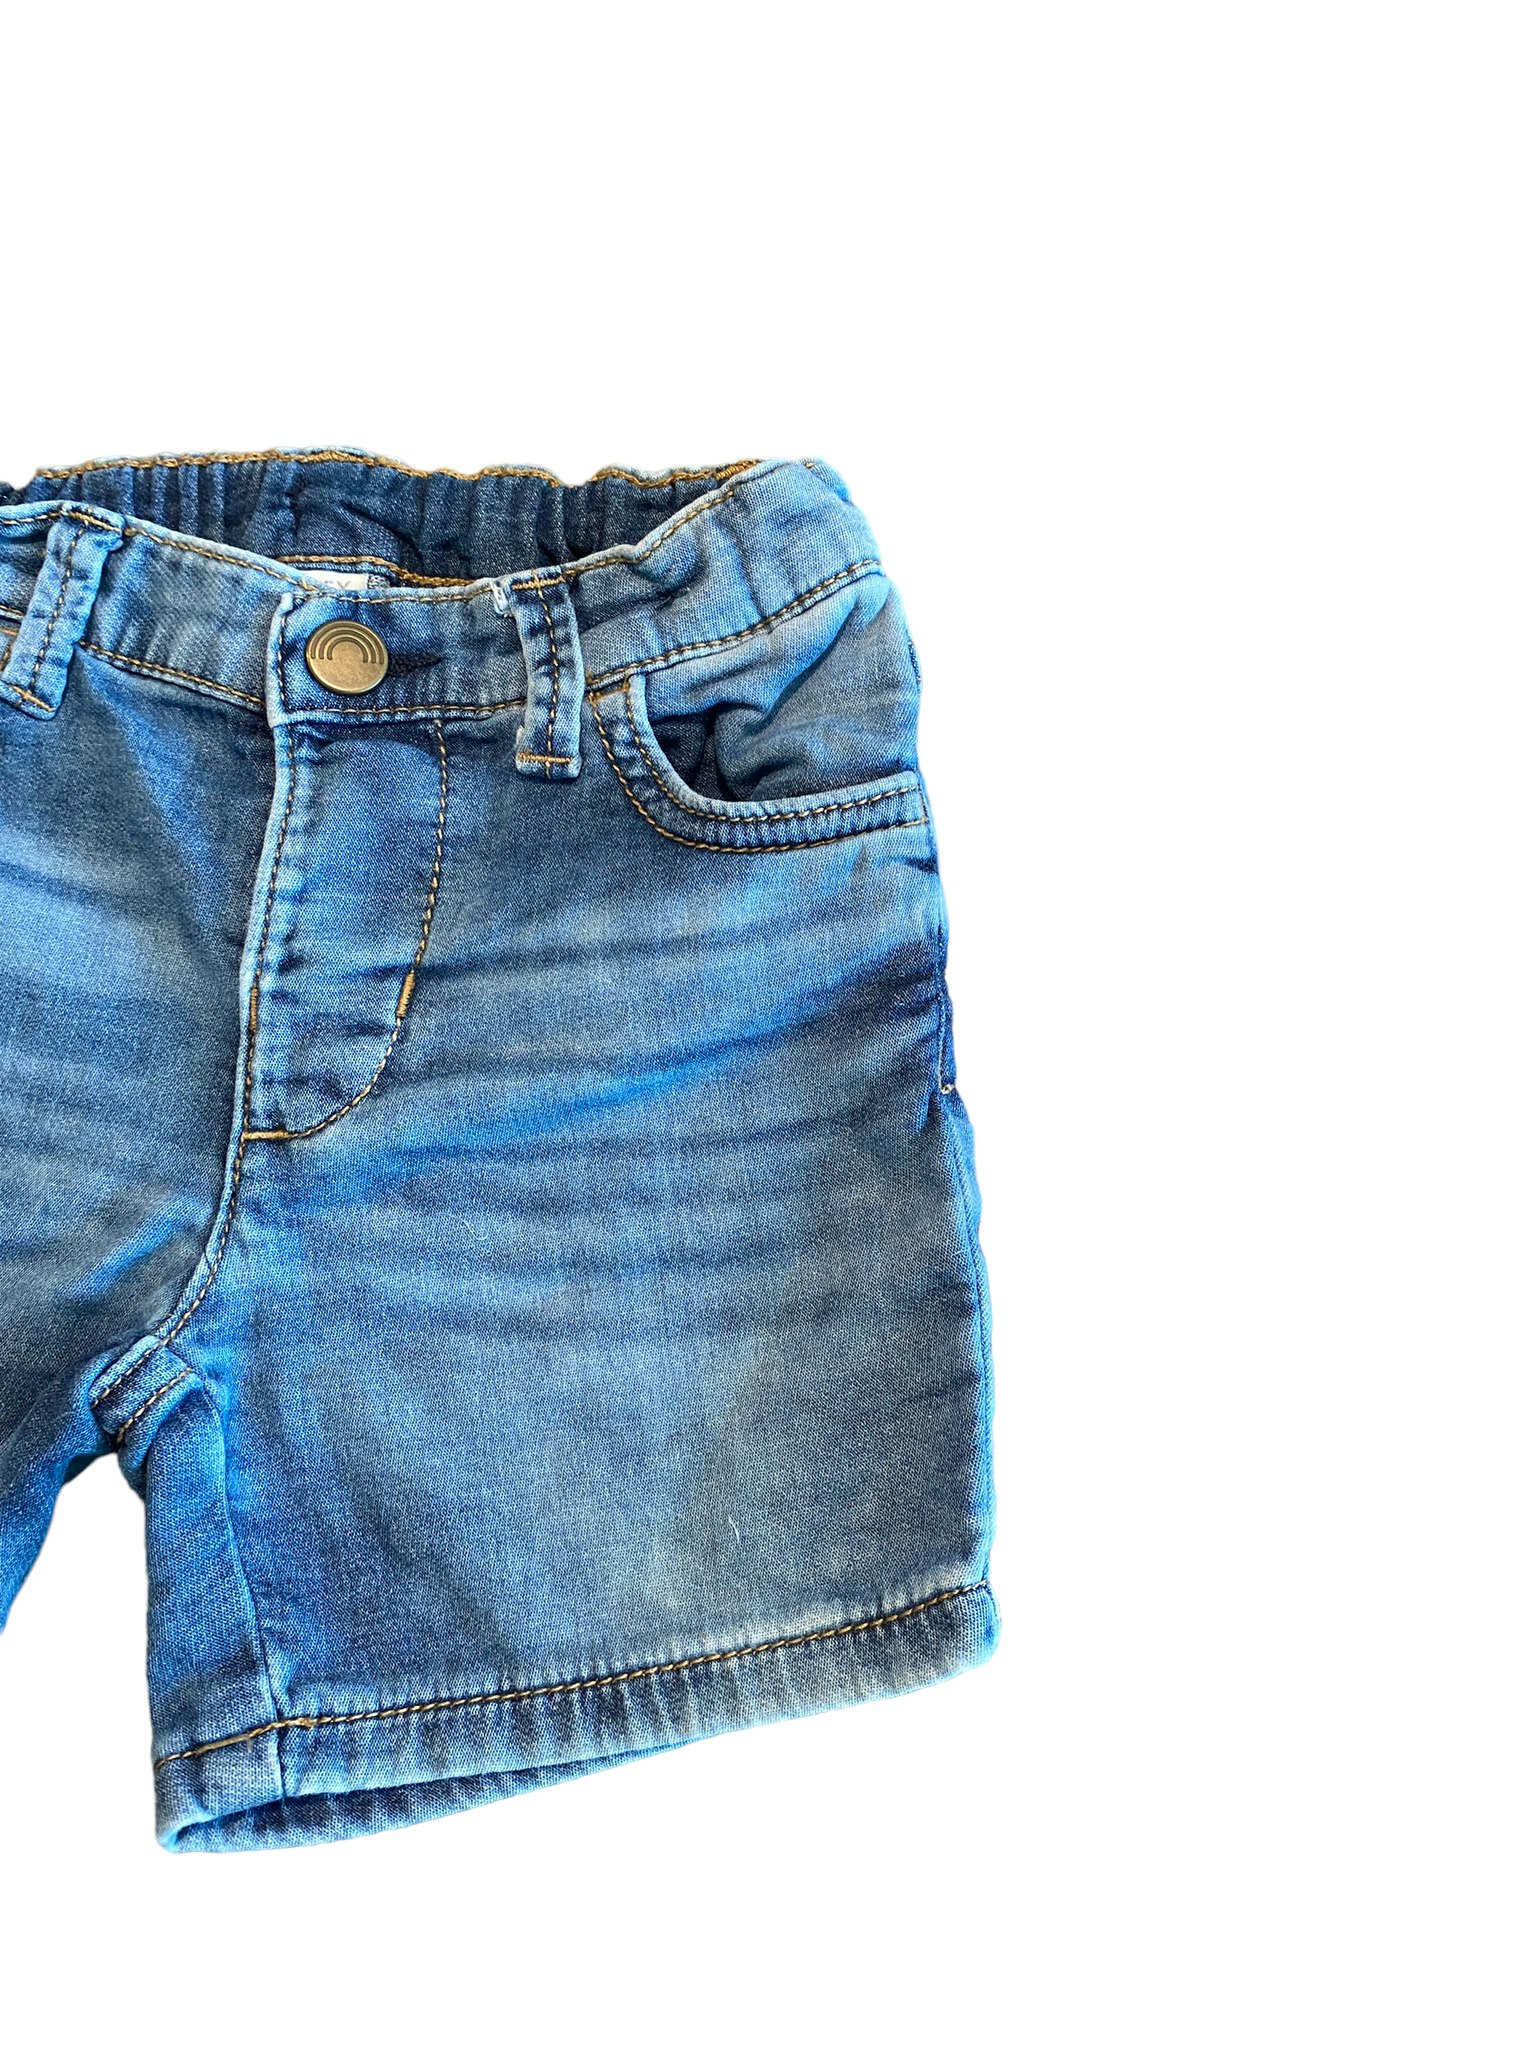 Mjuka jeansshorts, Lindex, stl 74